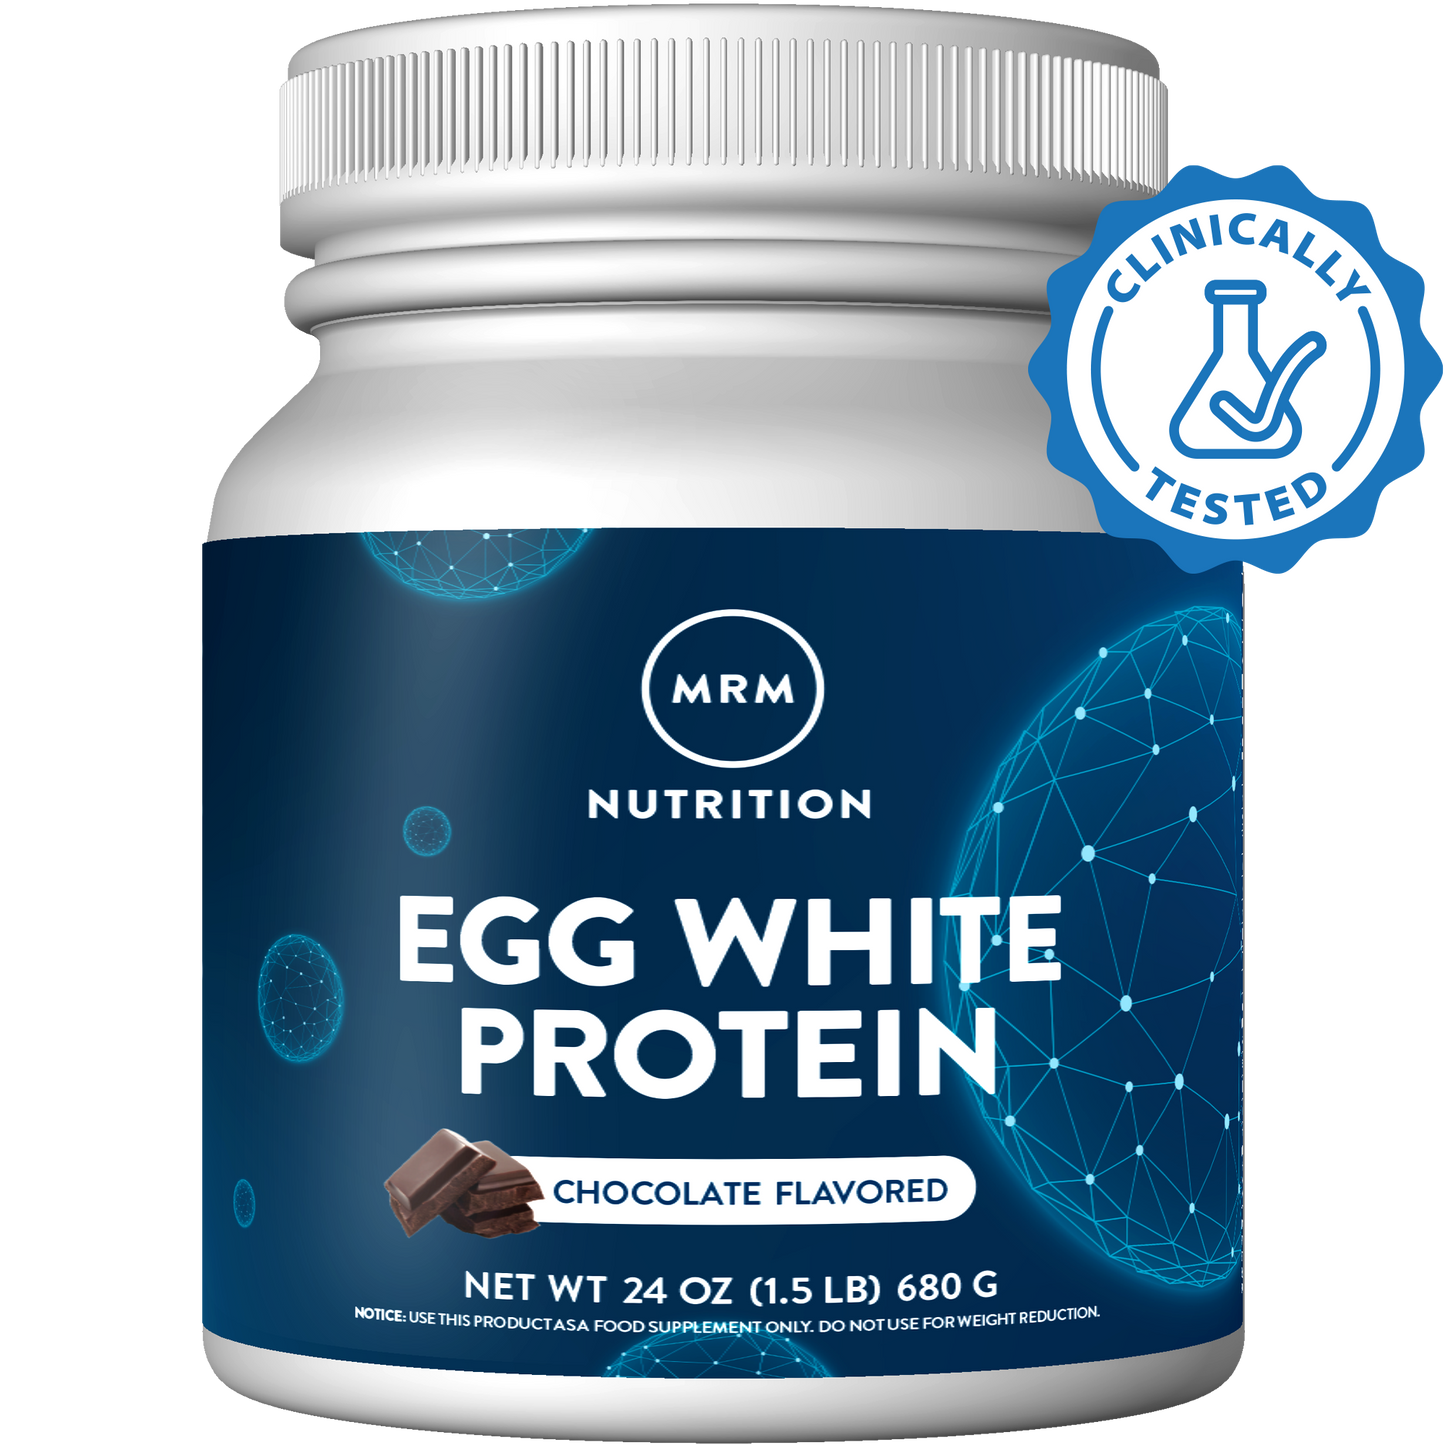 Egg White Protein Vanilla Flavored (12oz)